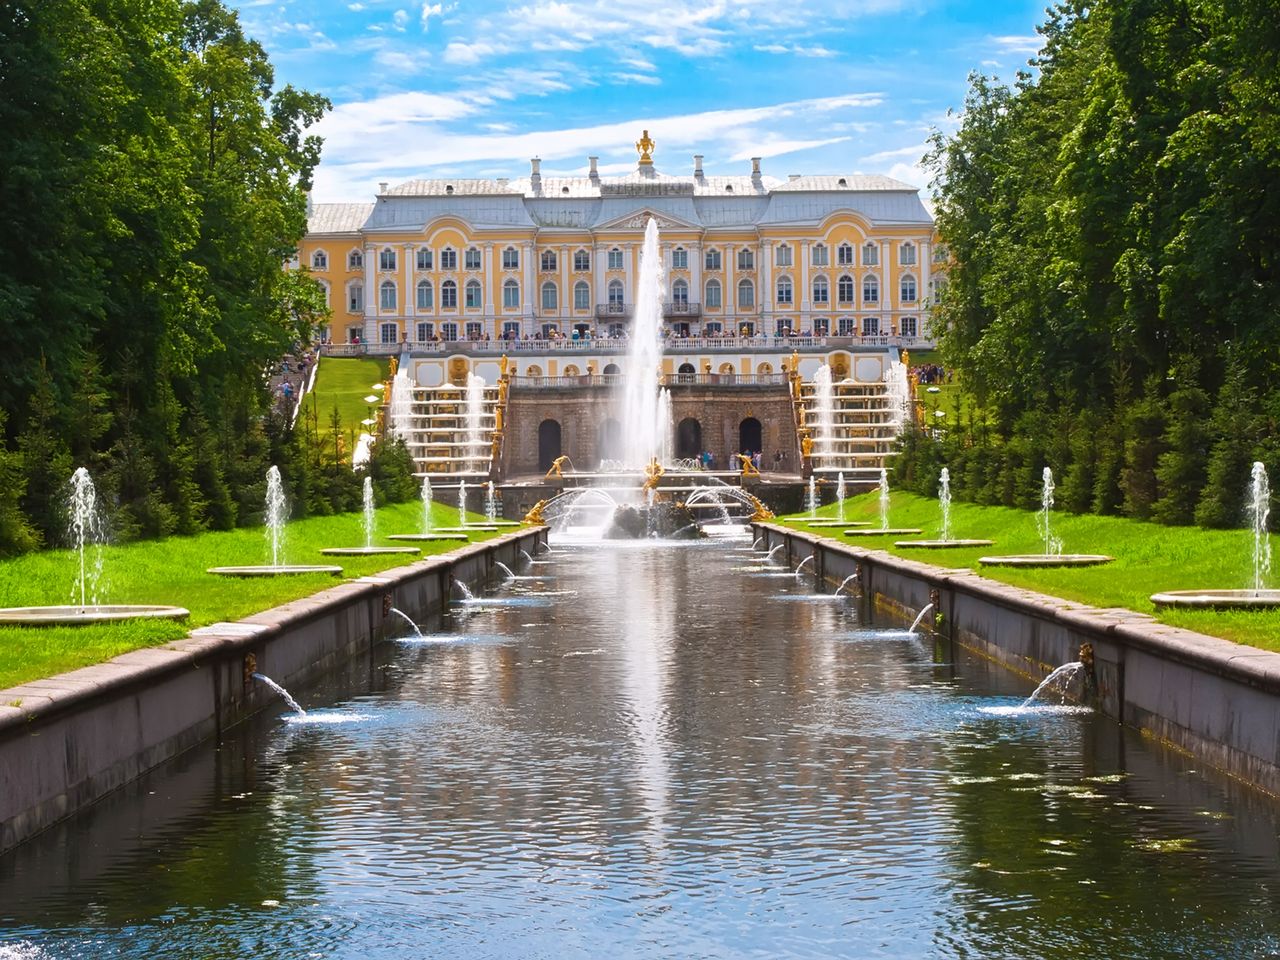 Петергоф – золоченая столица фонтанов  | Цена 12590₽, отзывы, описание экскурсии